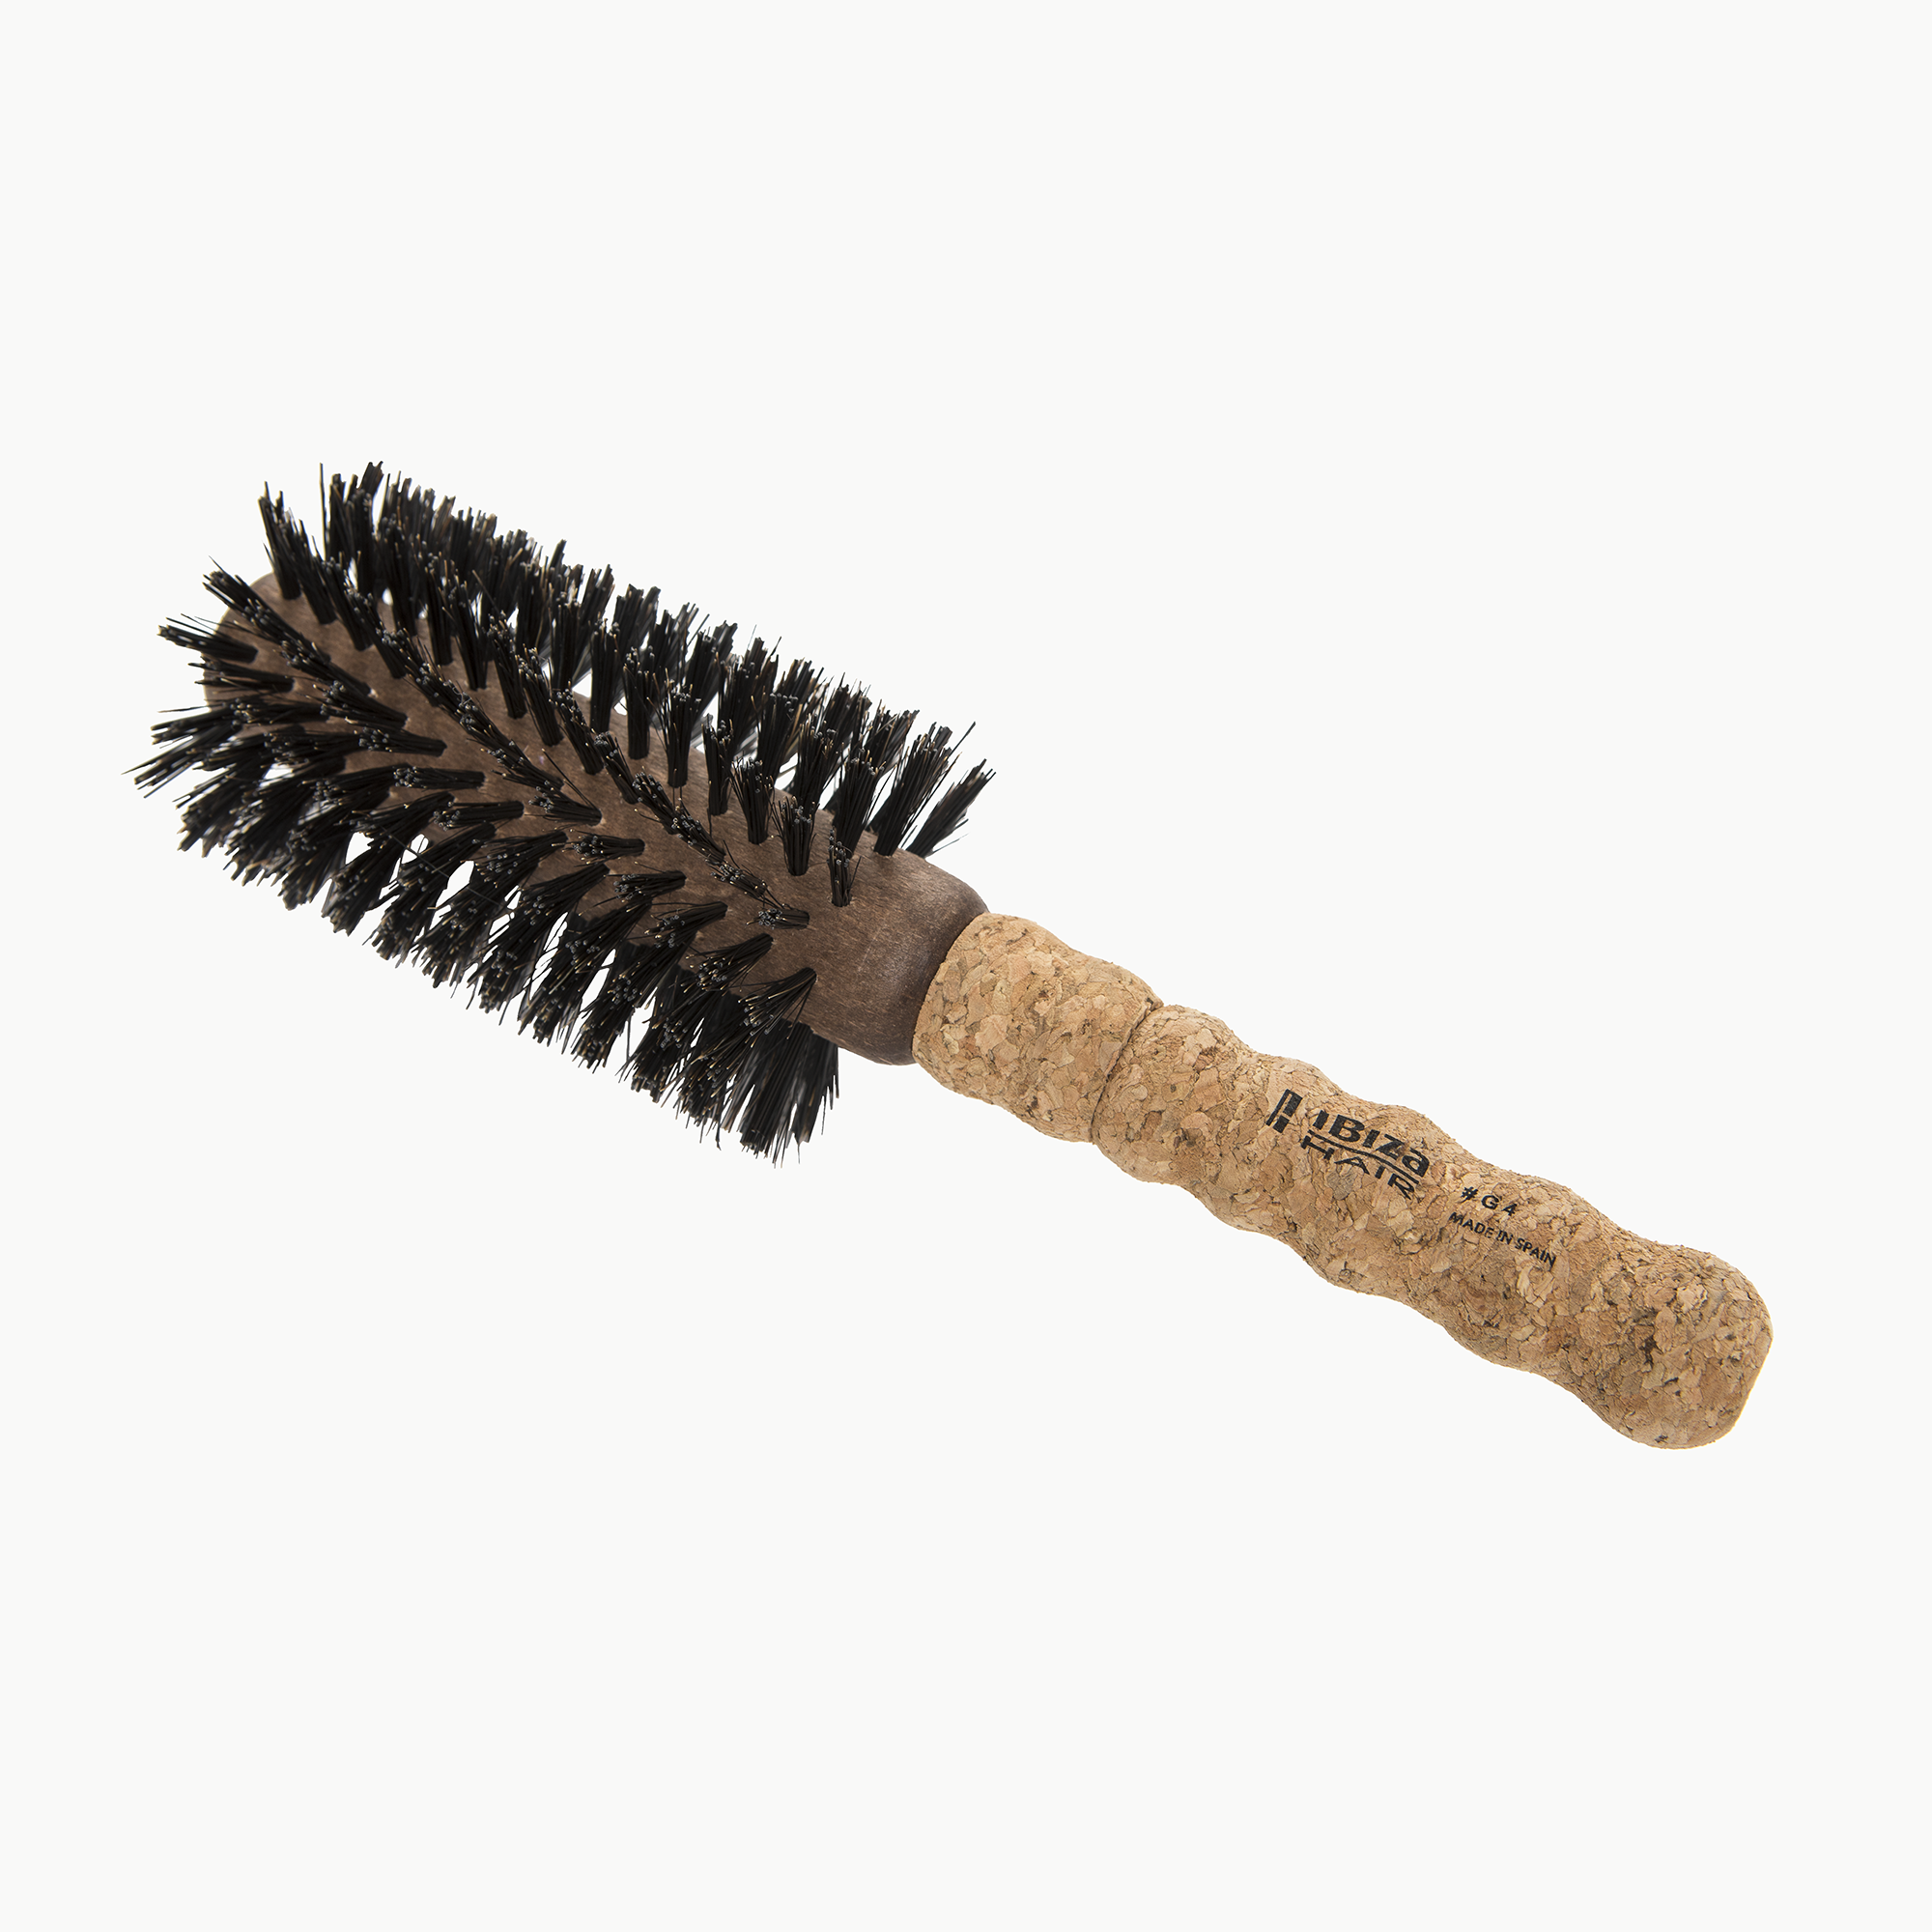 Ibiza Hair Brush - G4 / G4